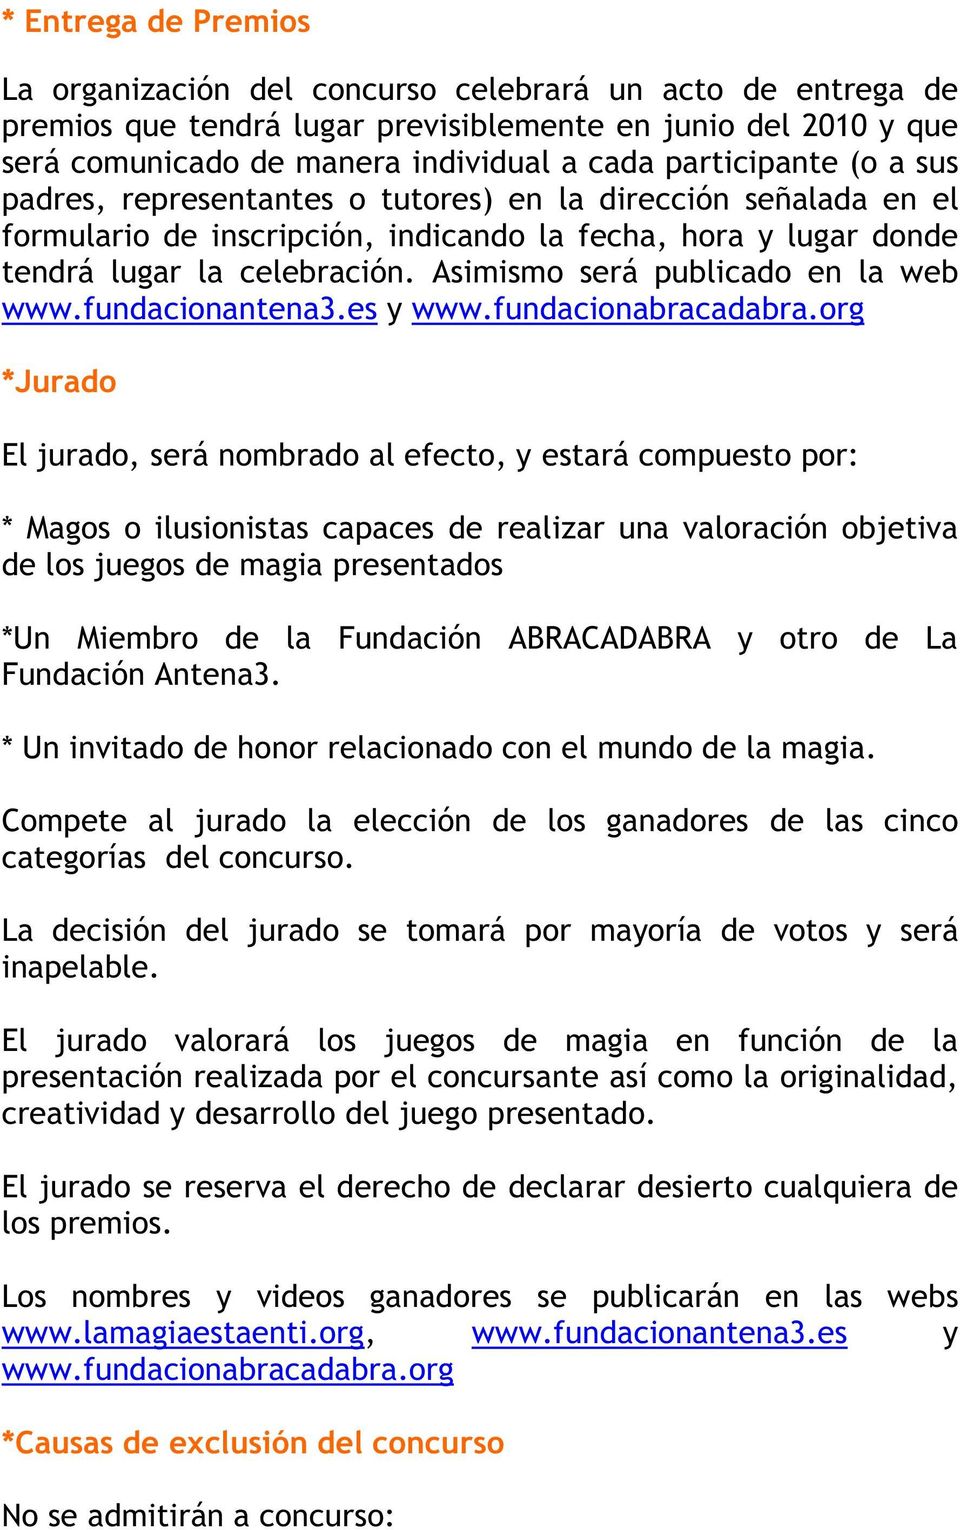 Asimismo será publicado en la web www.fundacionantena3.es y www.fundacionabracadabra.